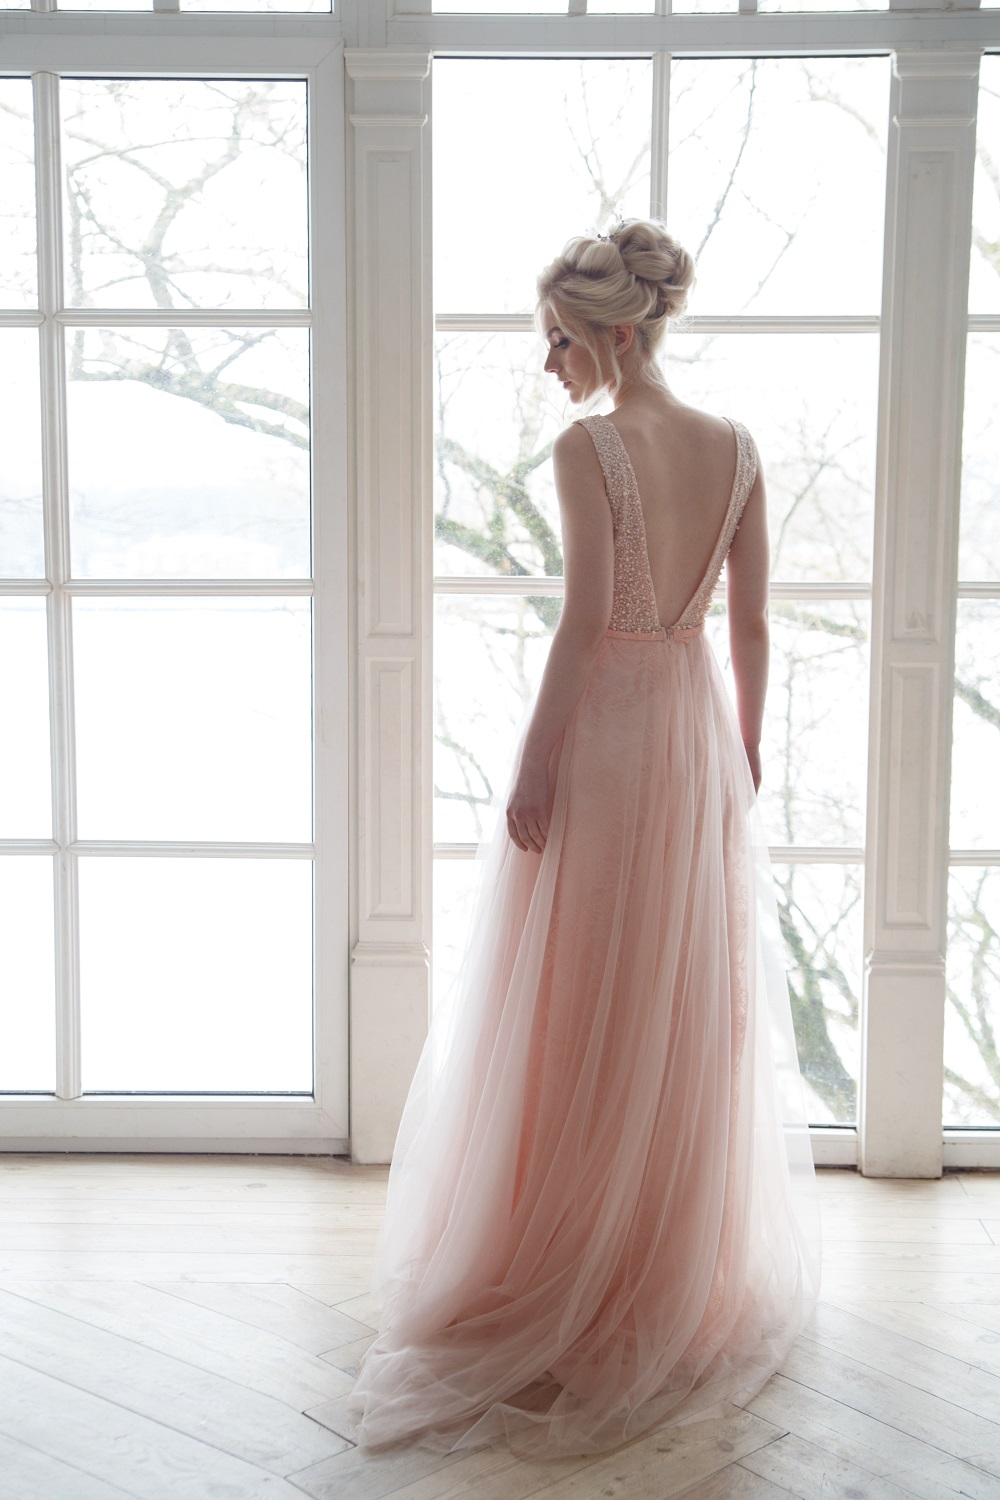 Różowa suknia ślubna. Panna młoda w delikatnej, różowej sukni ślubnej.